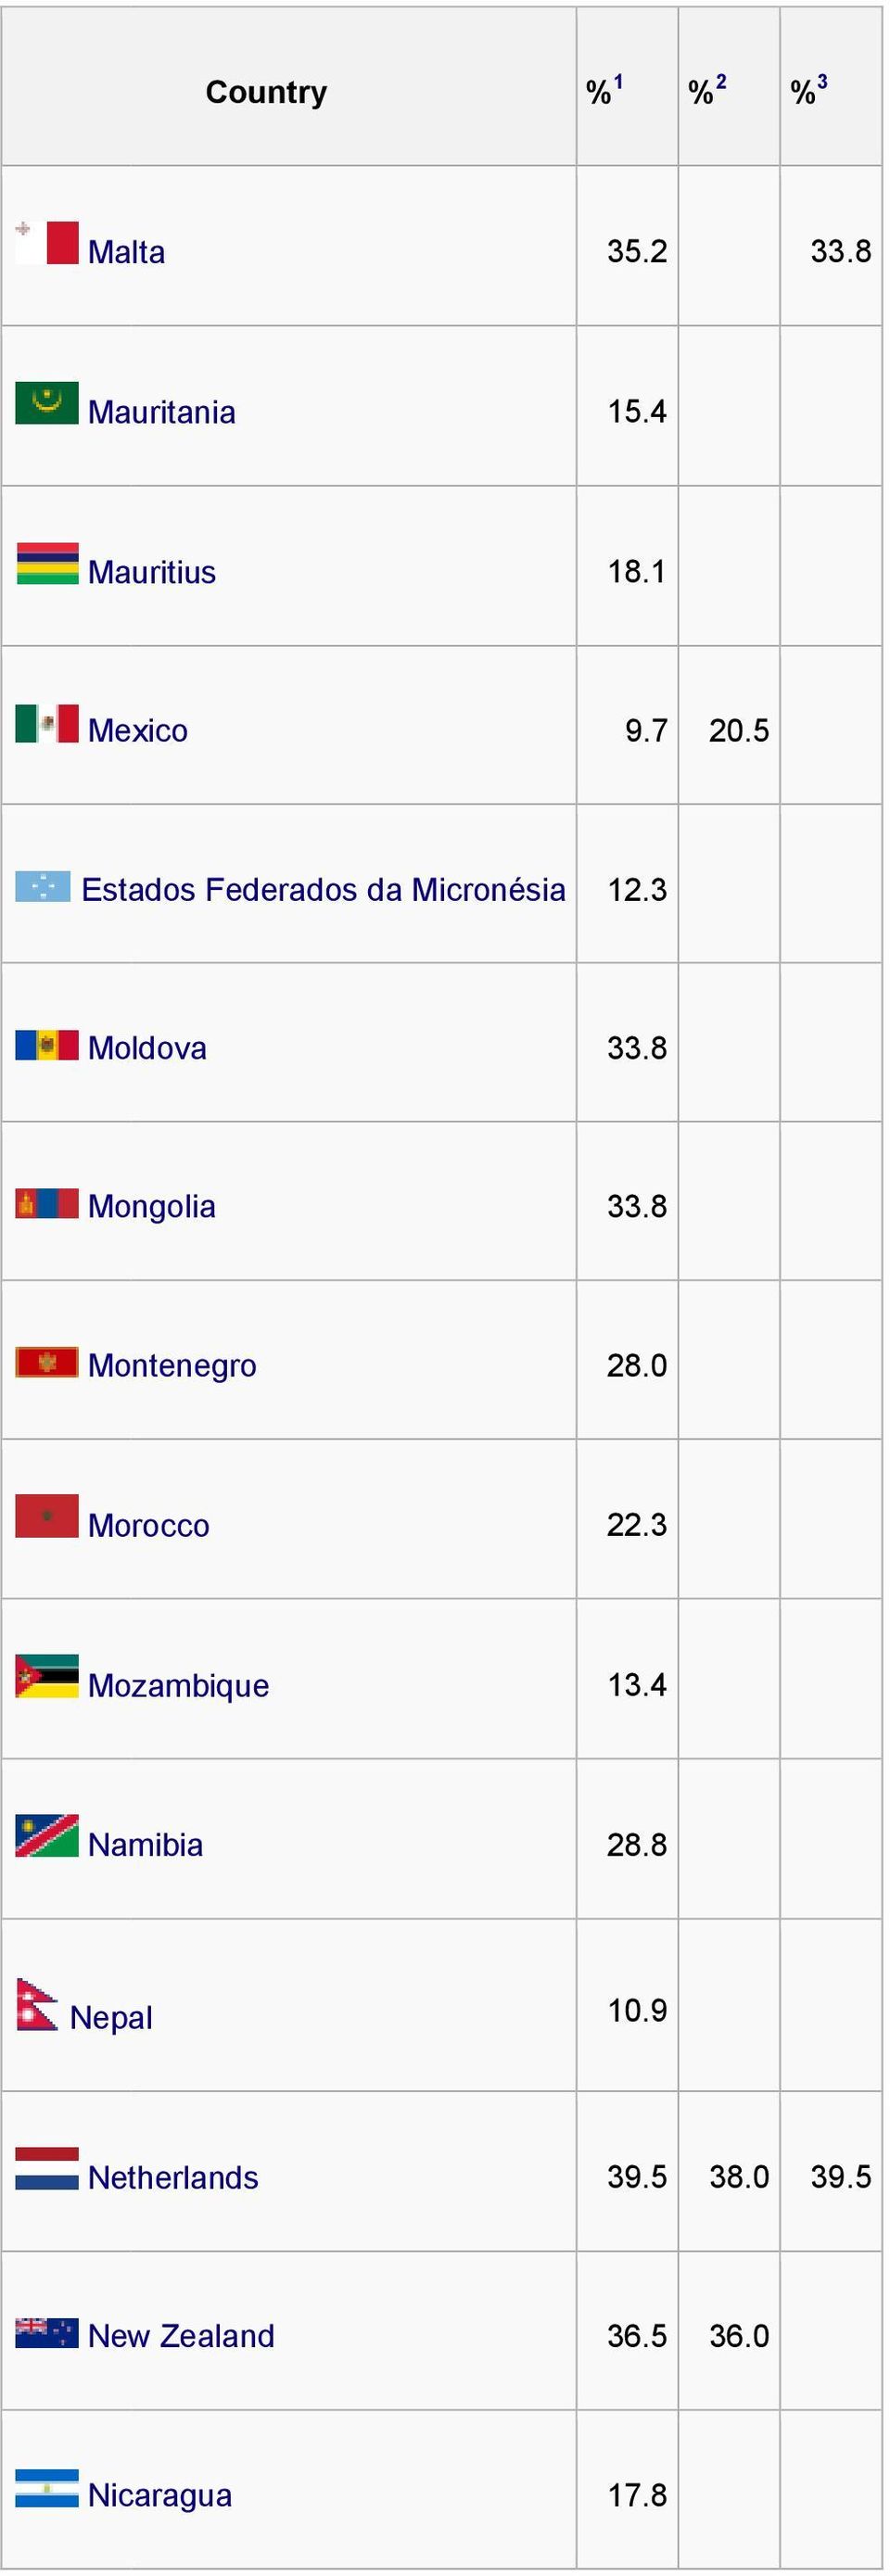 8 Mongolia 33.8 Montenegro 28.0 Morocco 22.3 Mozambique 13.